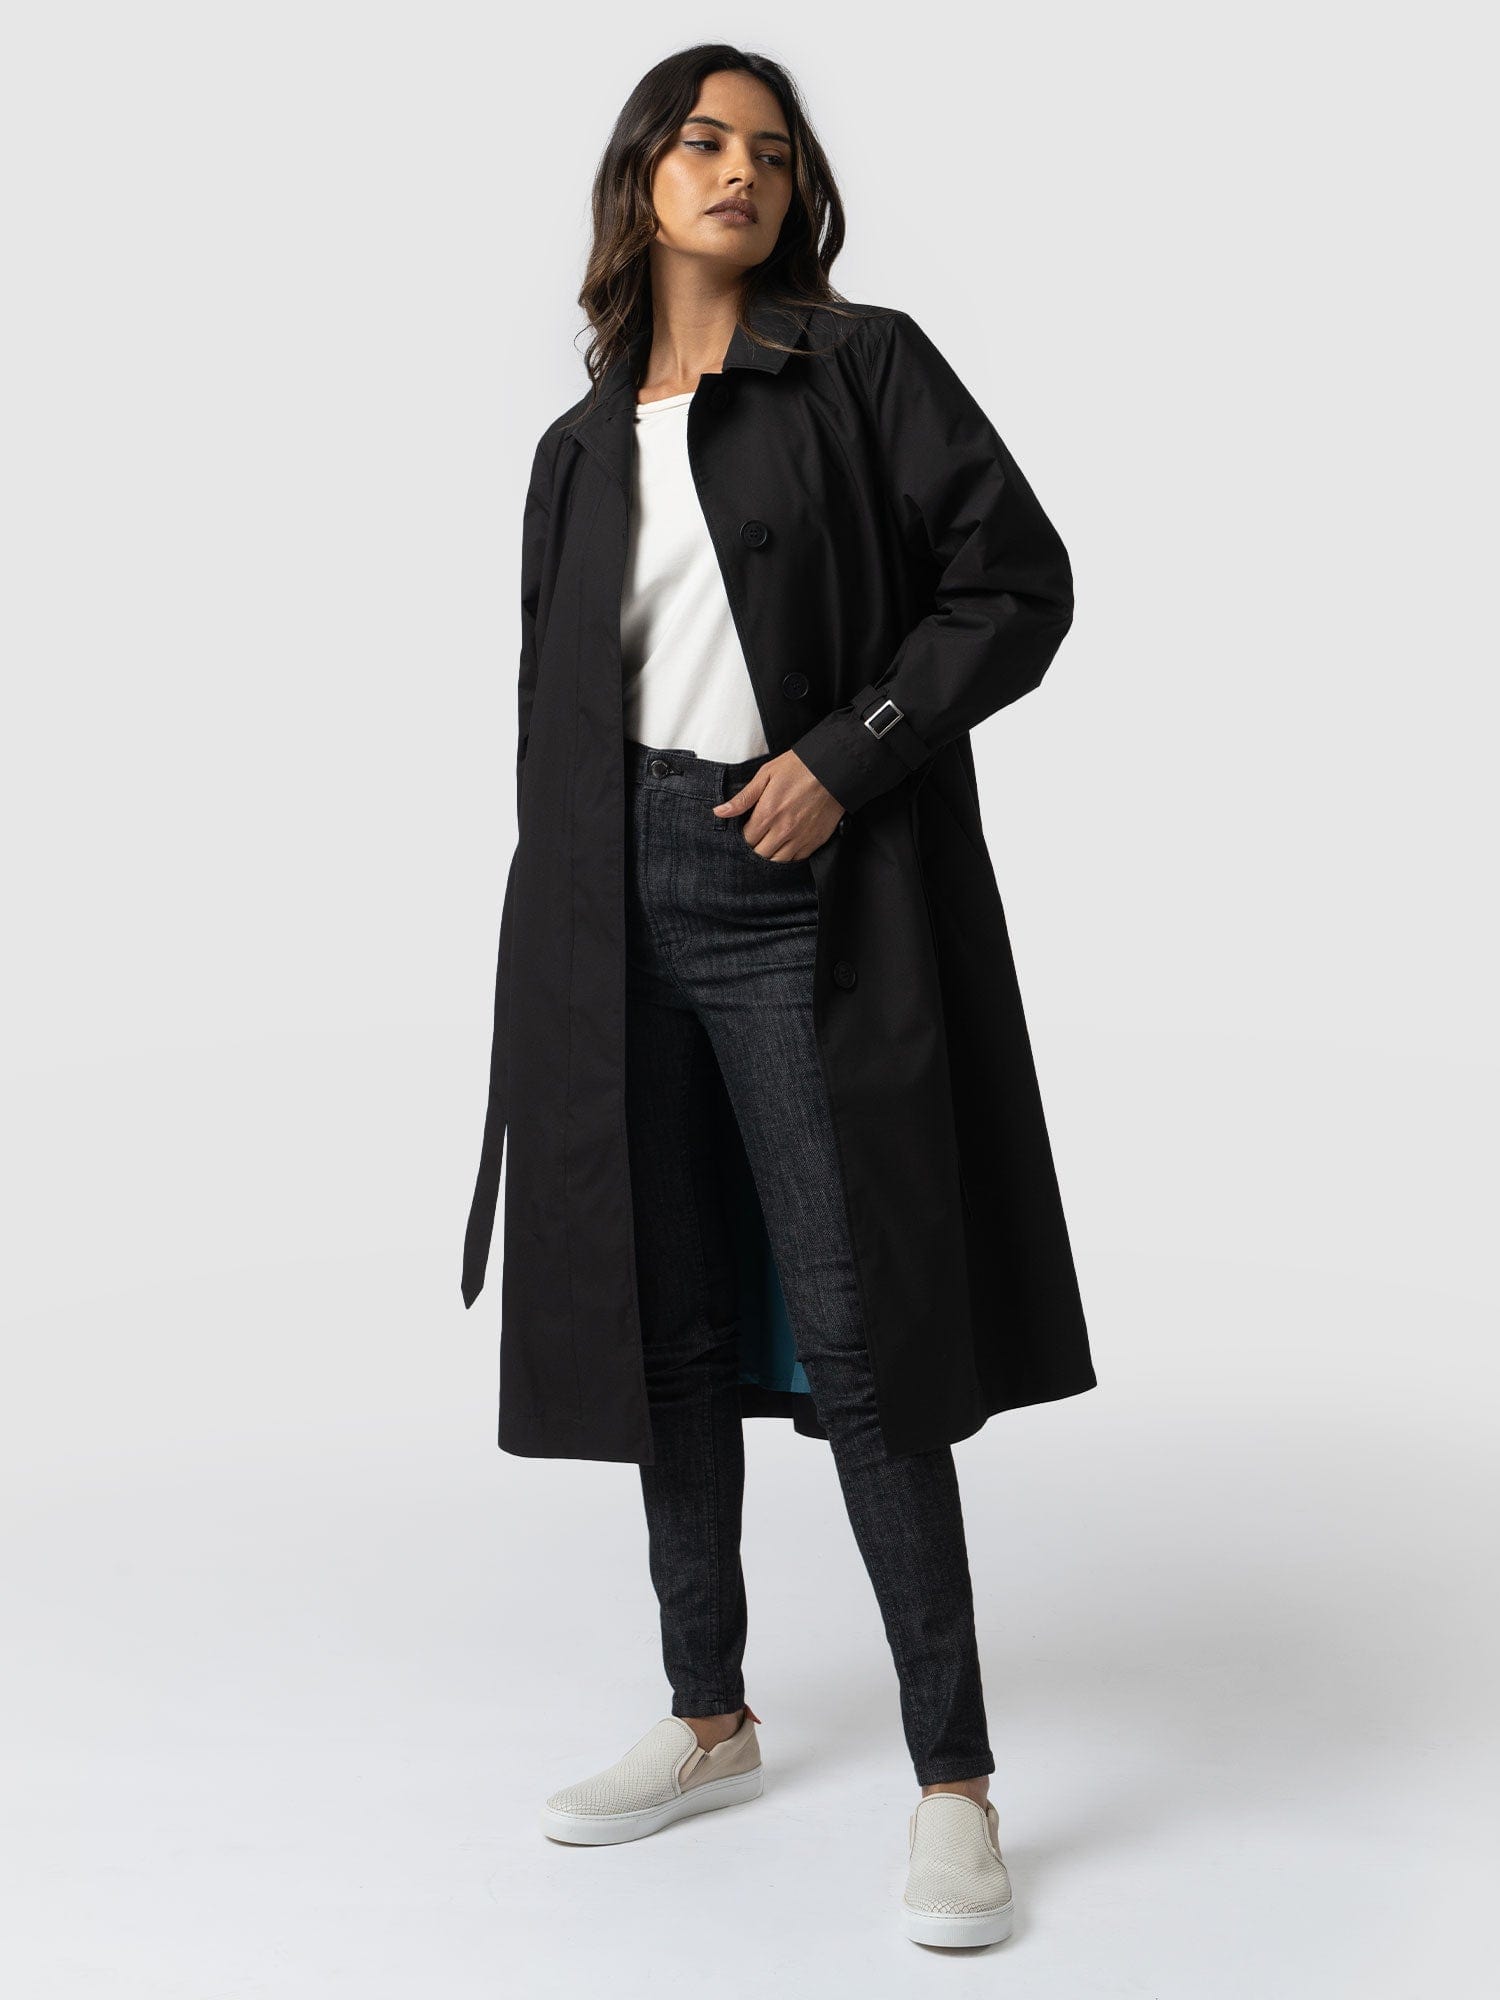 Waterproof A Line Trench Coat Black - Women's Overcoats | Saint +